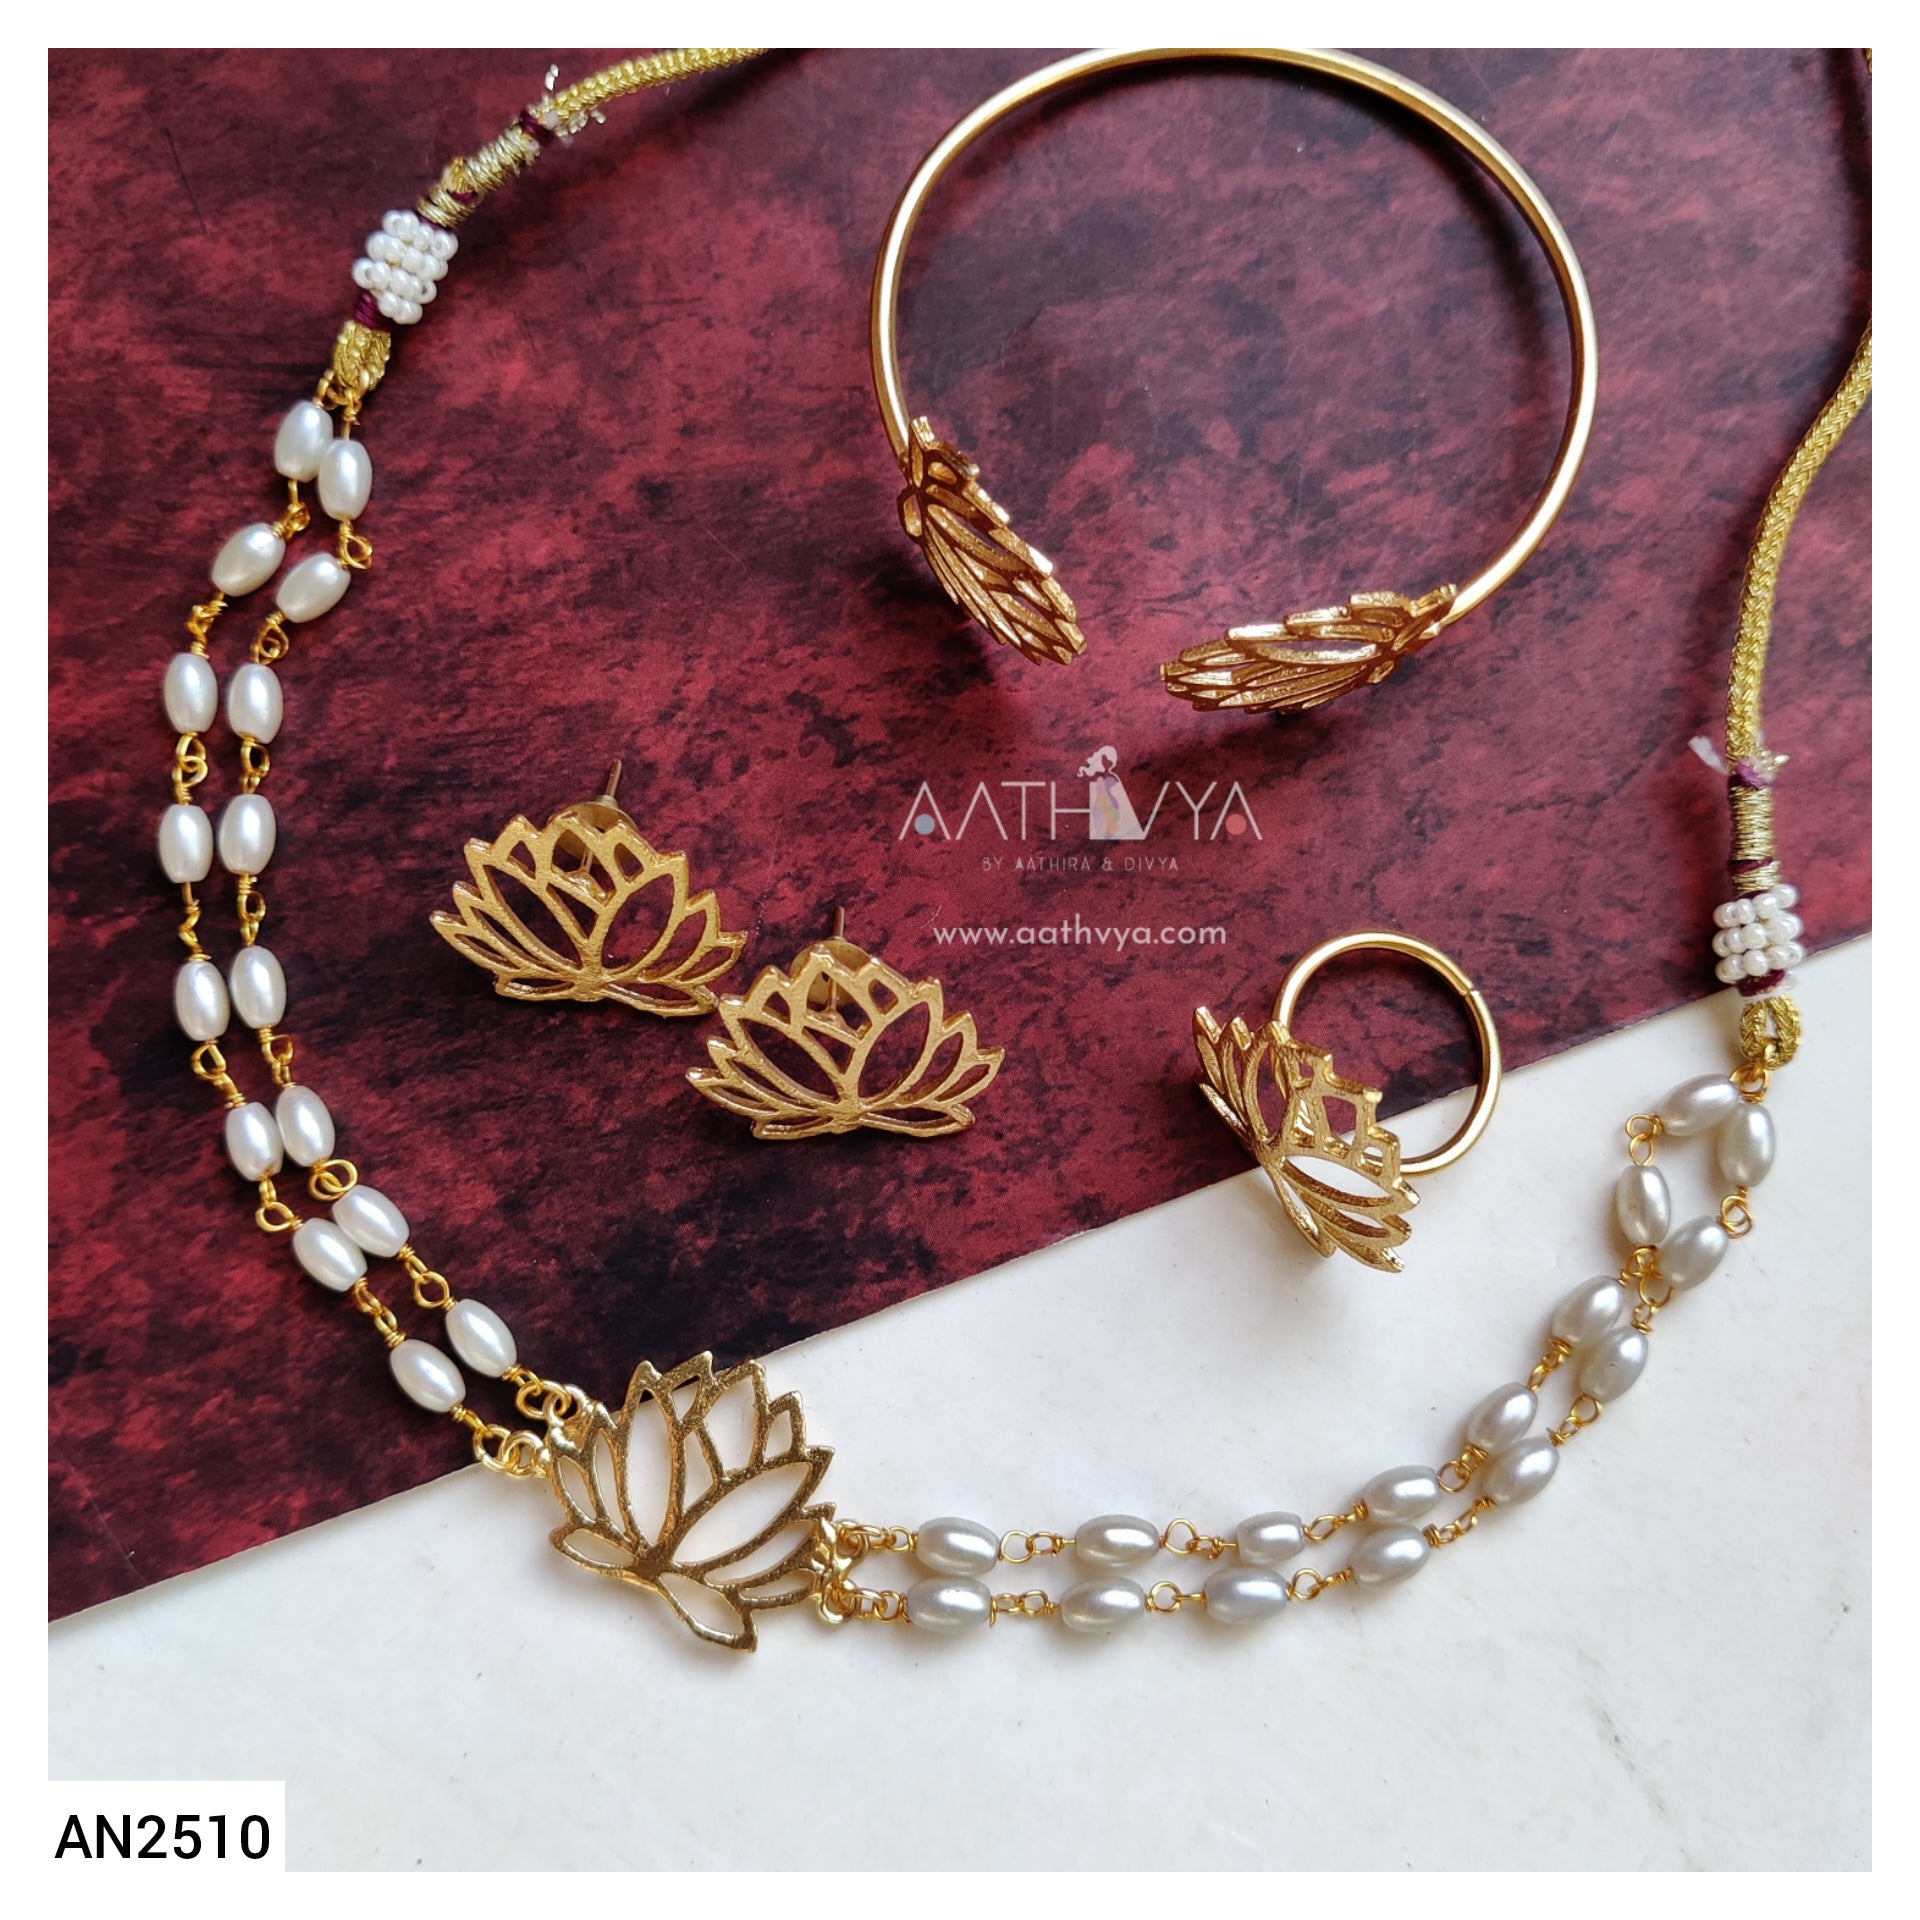 Buy Kamala Boho Macrame Bracelet With Gemstone, Macrame Jewelry, Healing  Jewelry, Citrine Bracelet, Carnelian Bracelet, Rose Quartz Bracelet Online  in India - Etsy